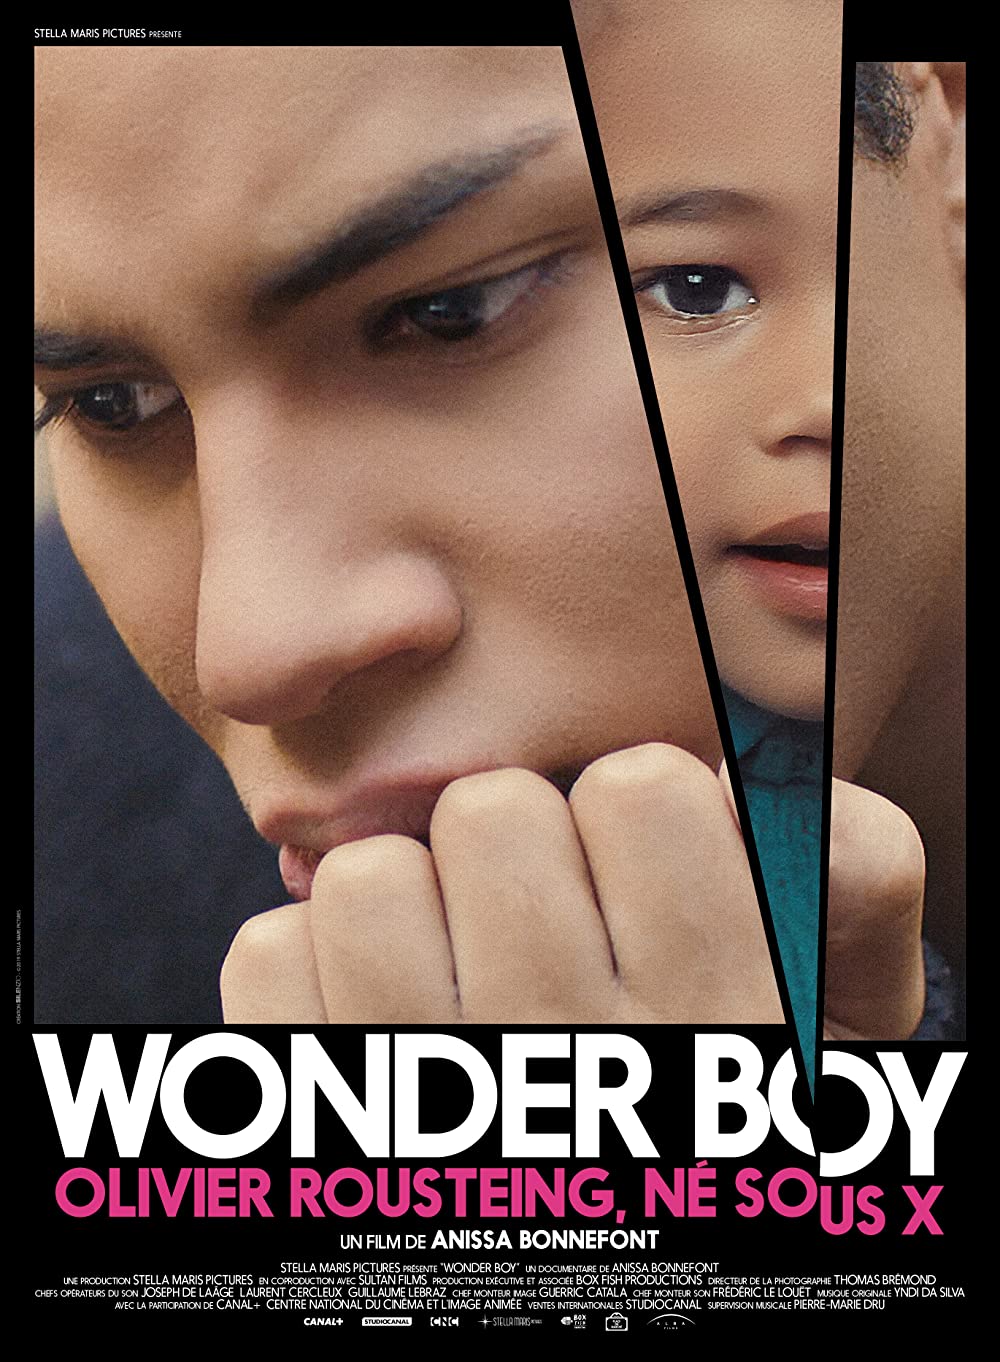 Filmbeschreibung zu Wonderboy